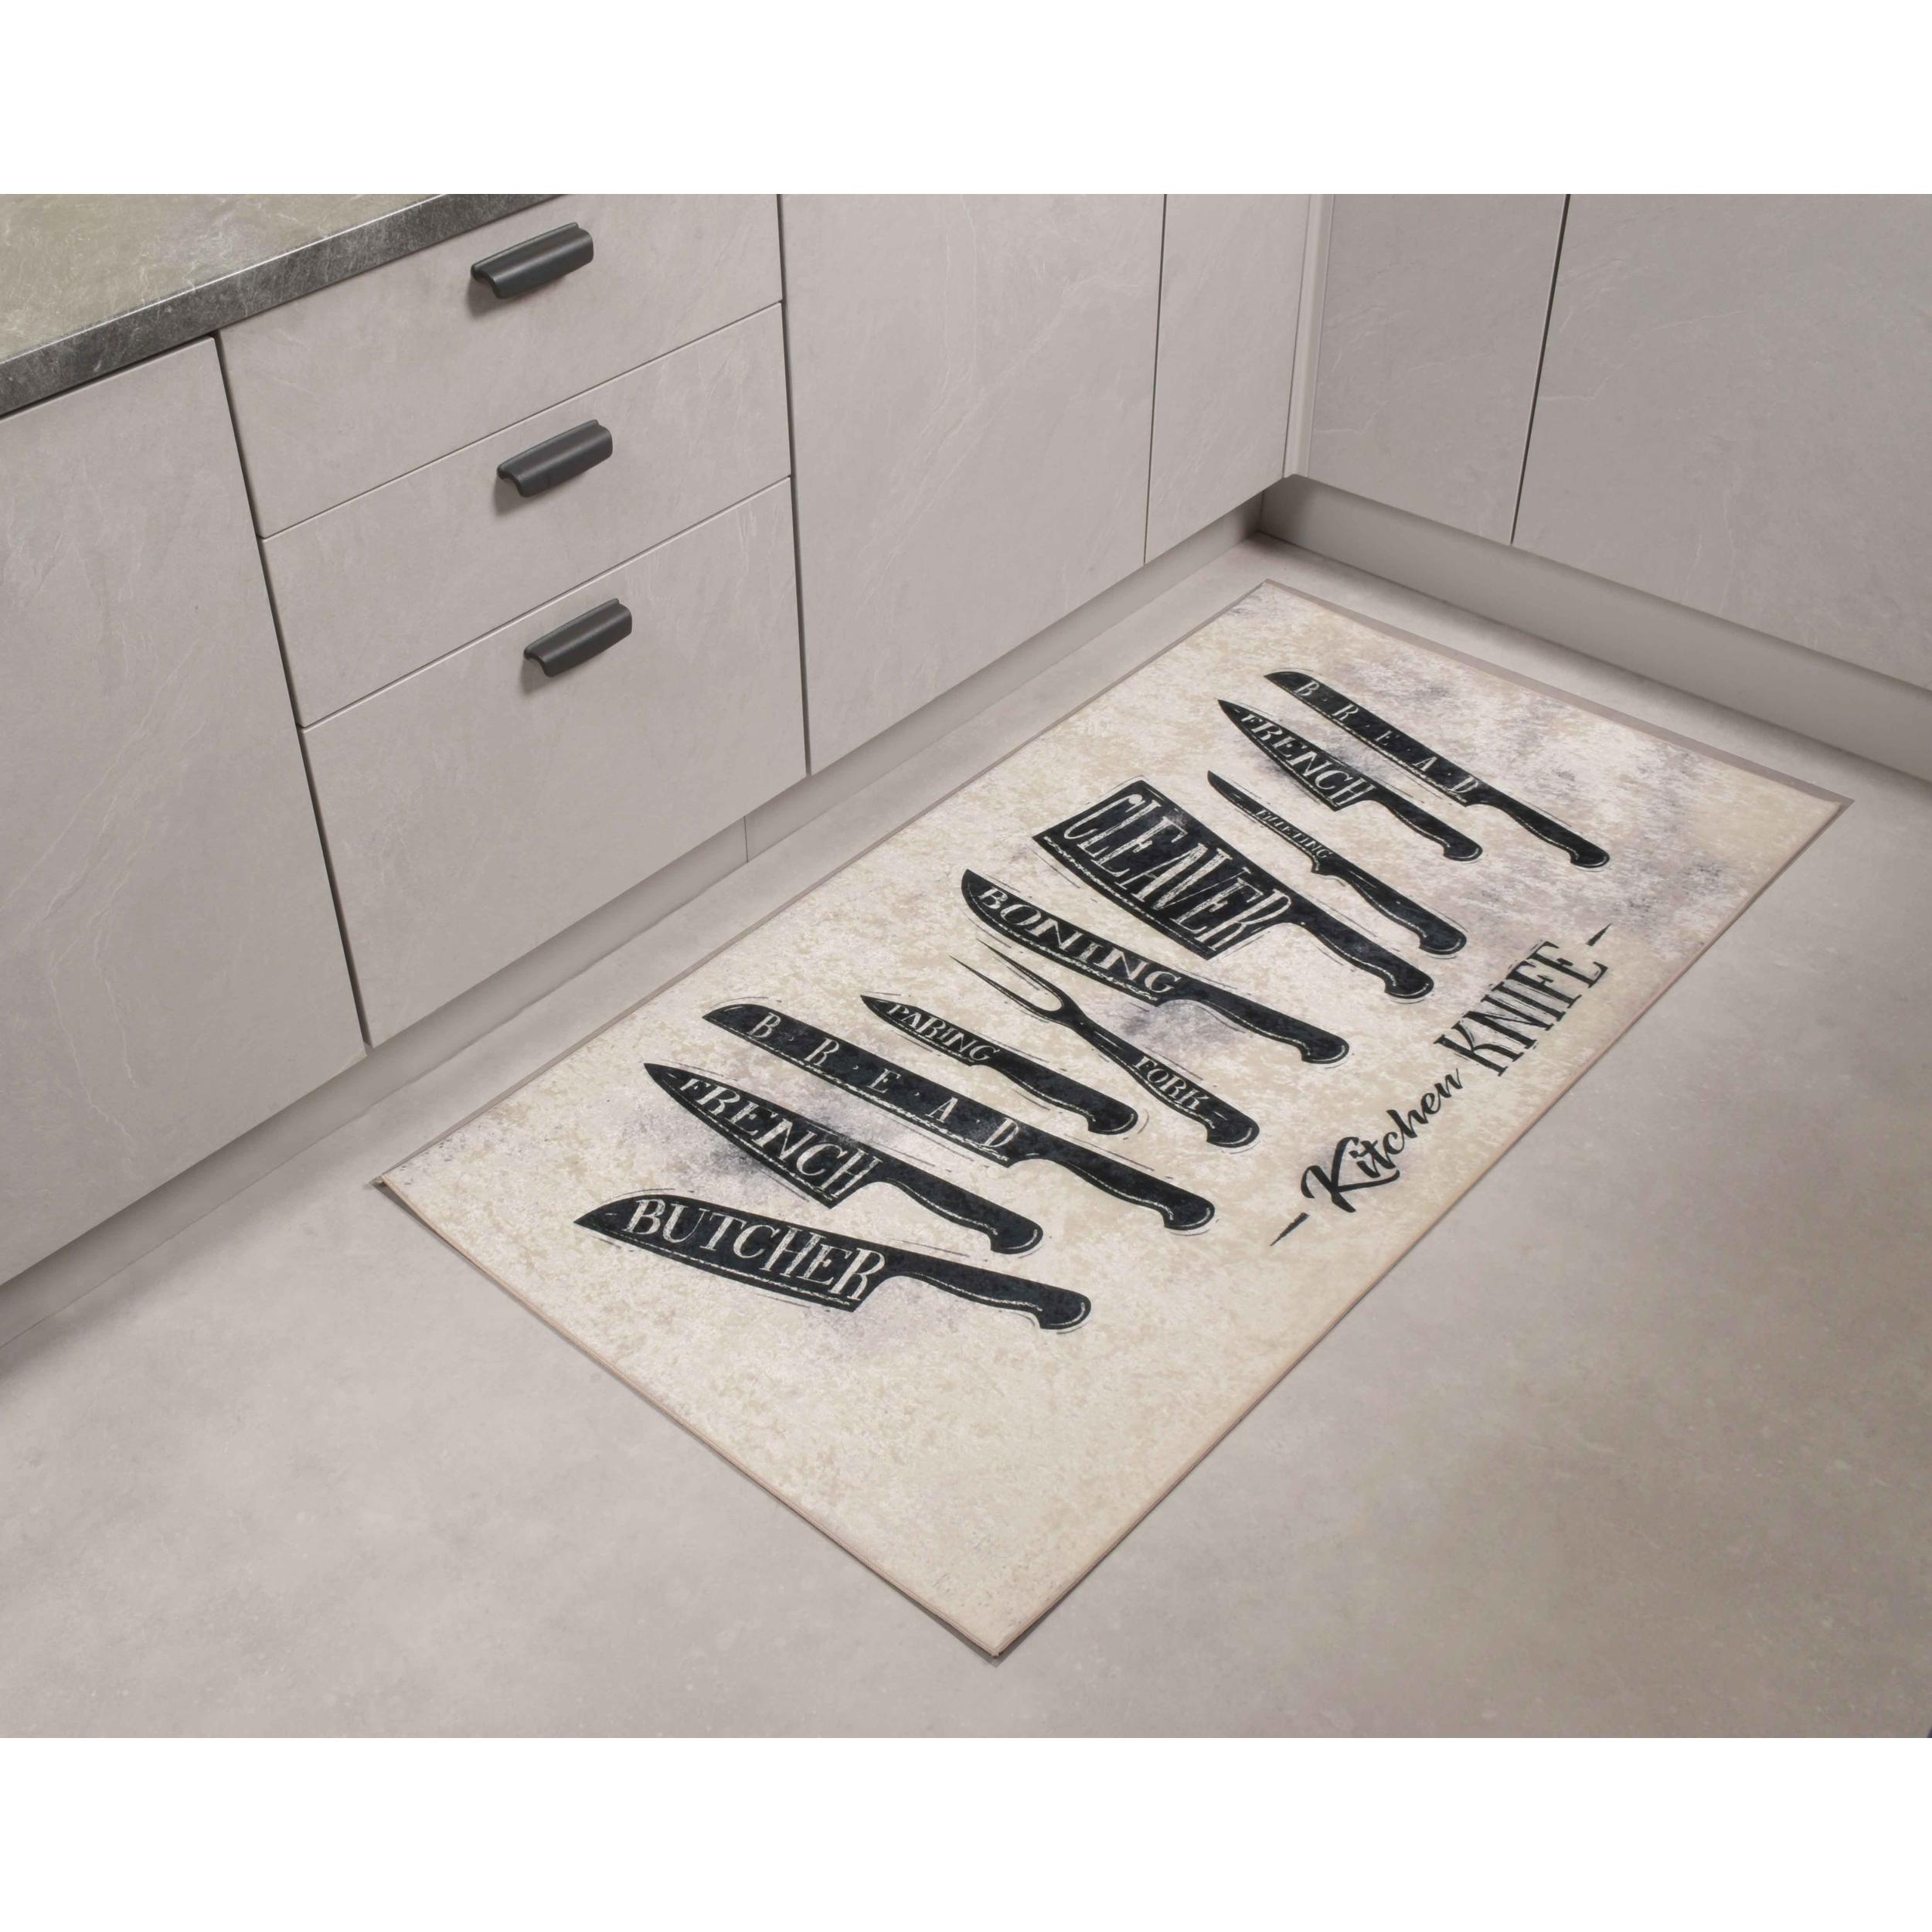 Stampa - tapis de cuisine motif couteaux de cuisine antidérapant et lavable en machine à 30°C, blanc et noir